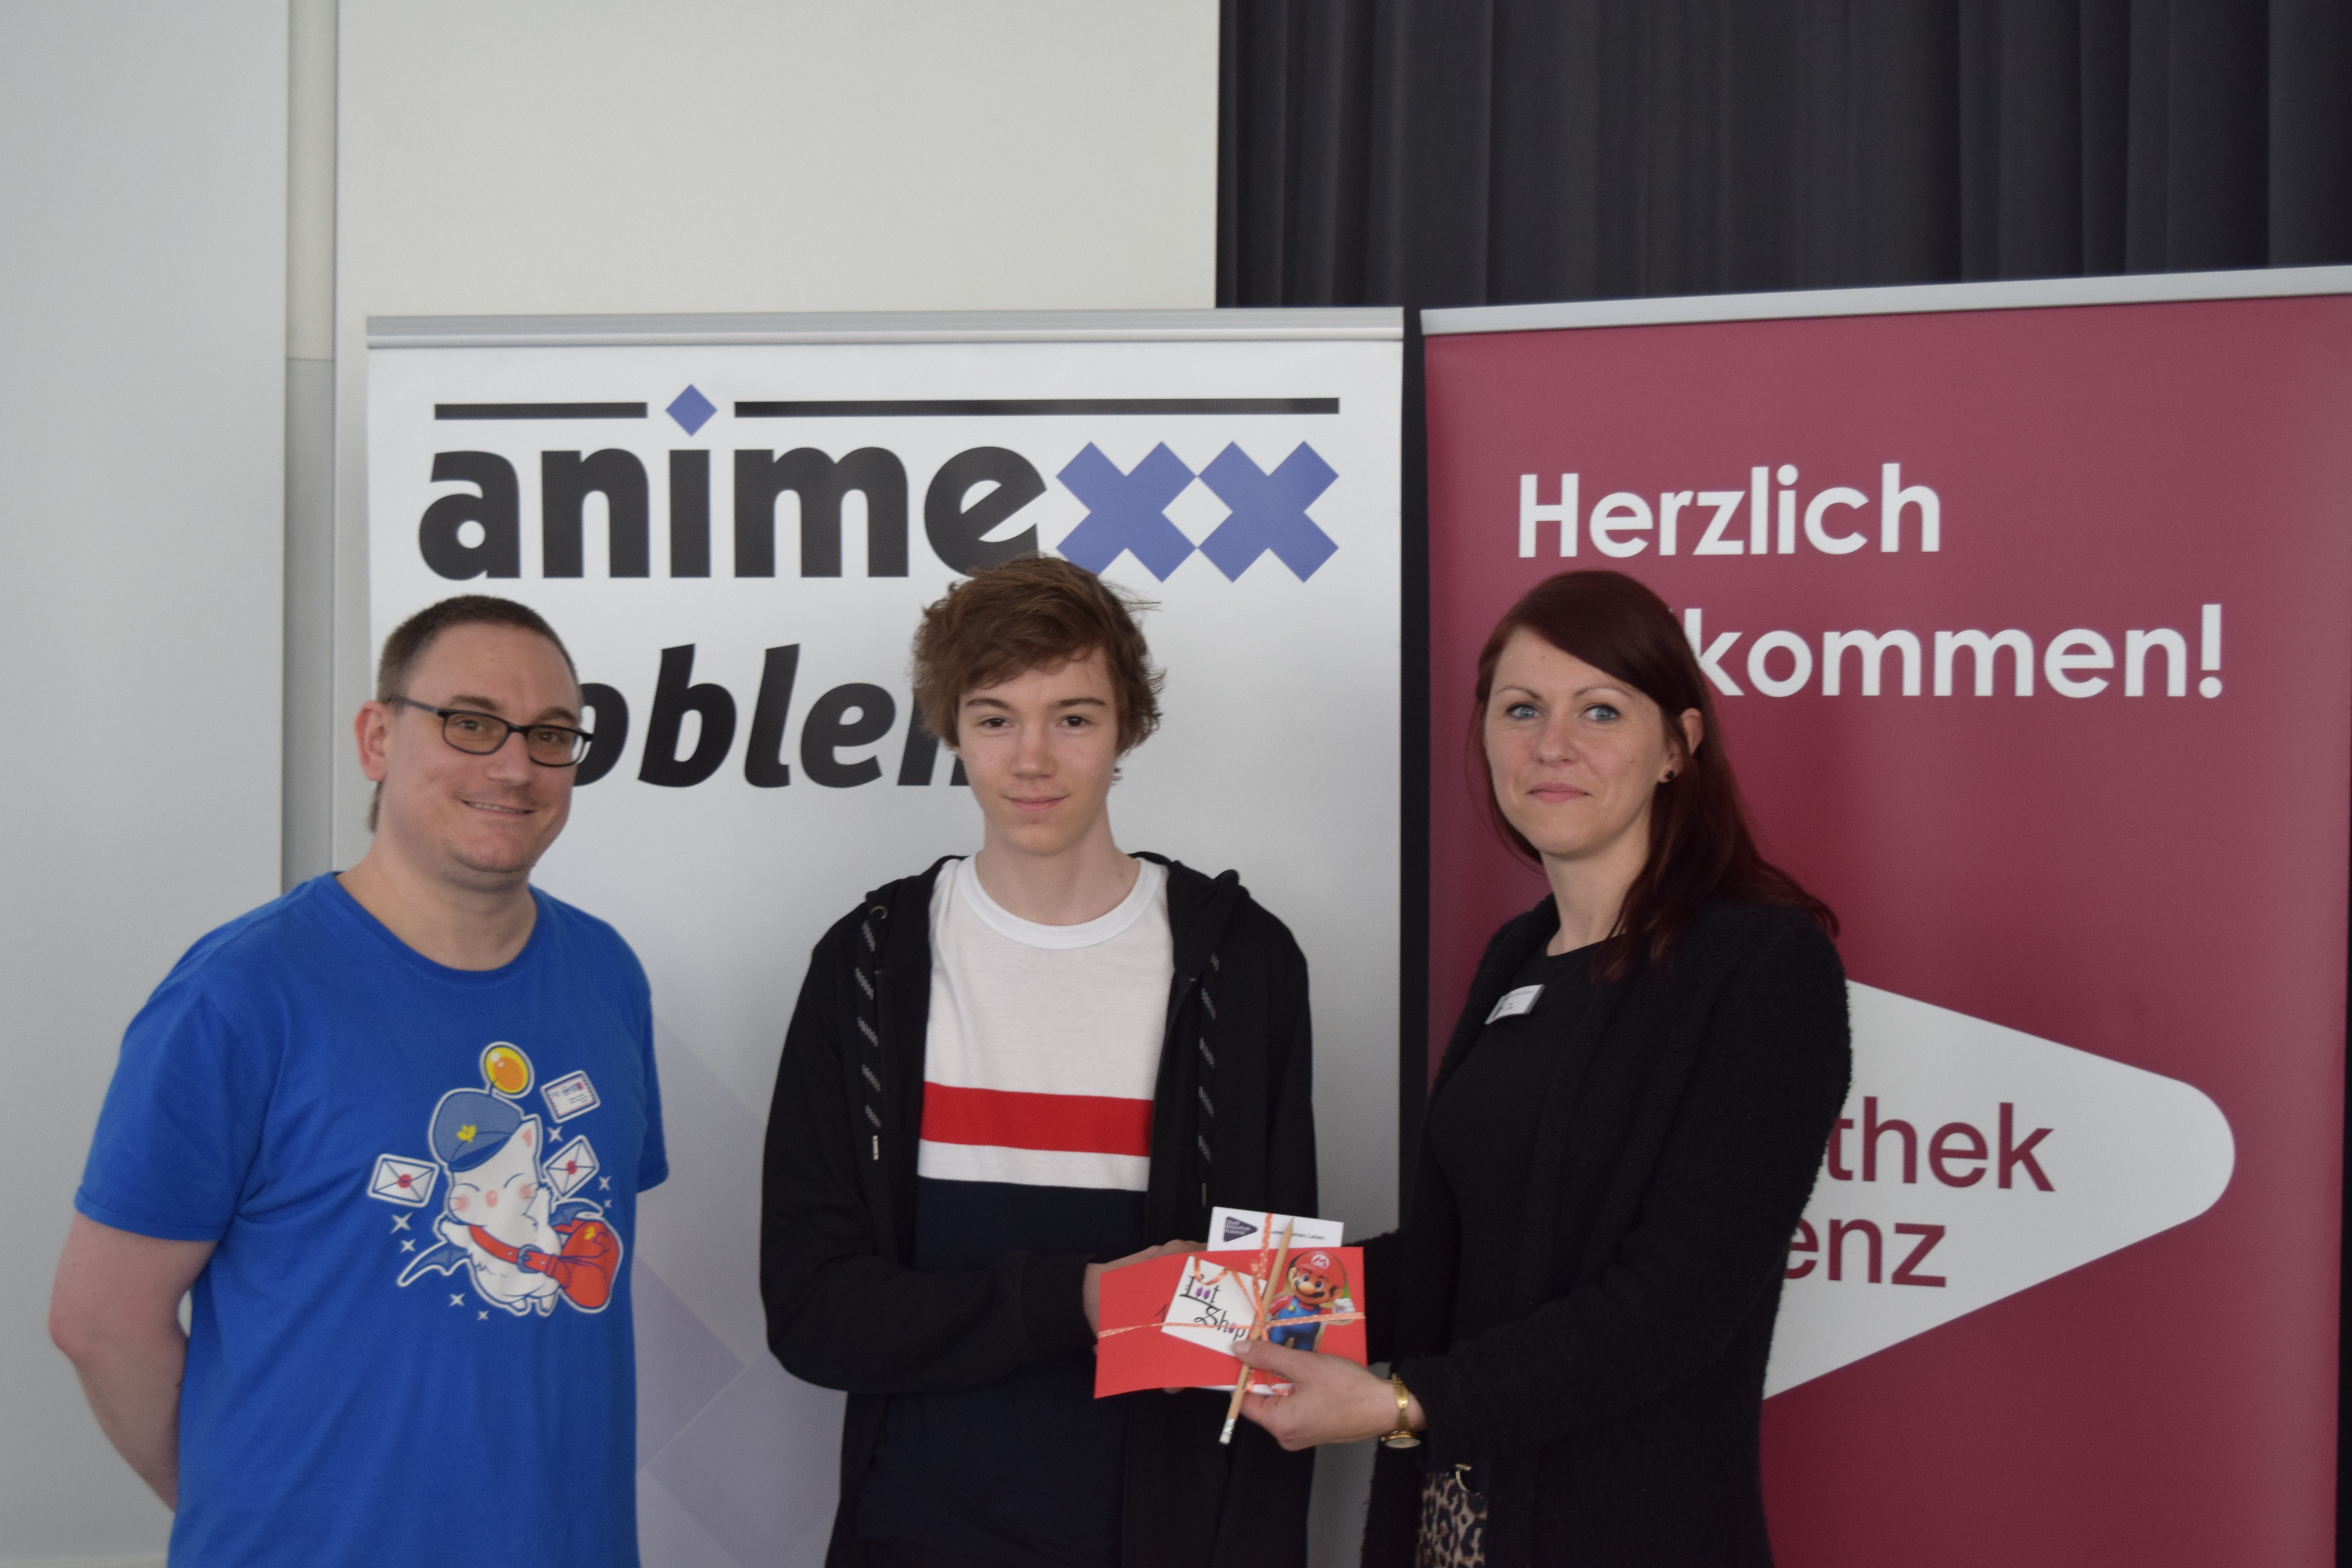 Lamy vom Koblenzer Loot Shop und Julia Löffler von der StadtBibliothek Koblenz übergeben dem Gewinner des Mario Kart - Turnier den Preis 